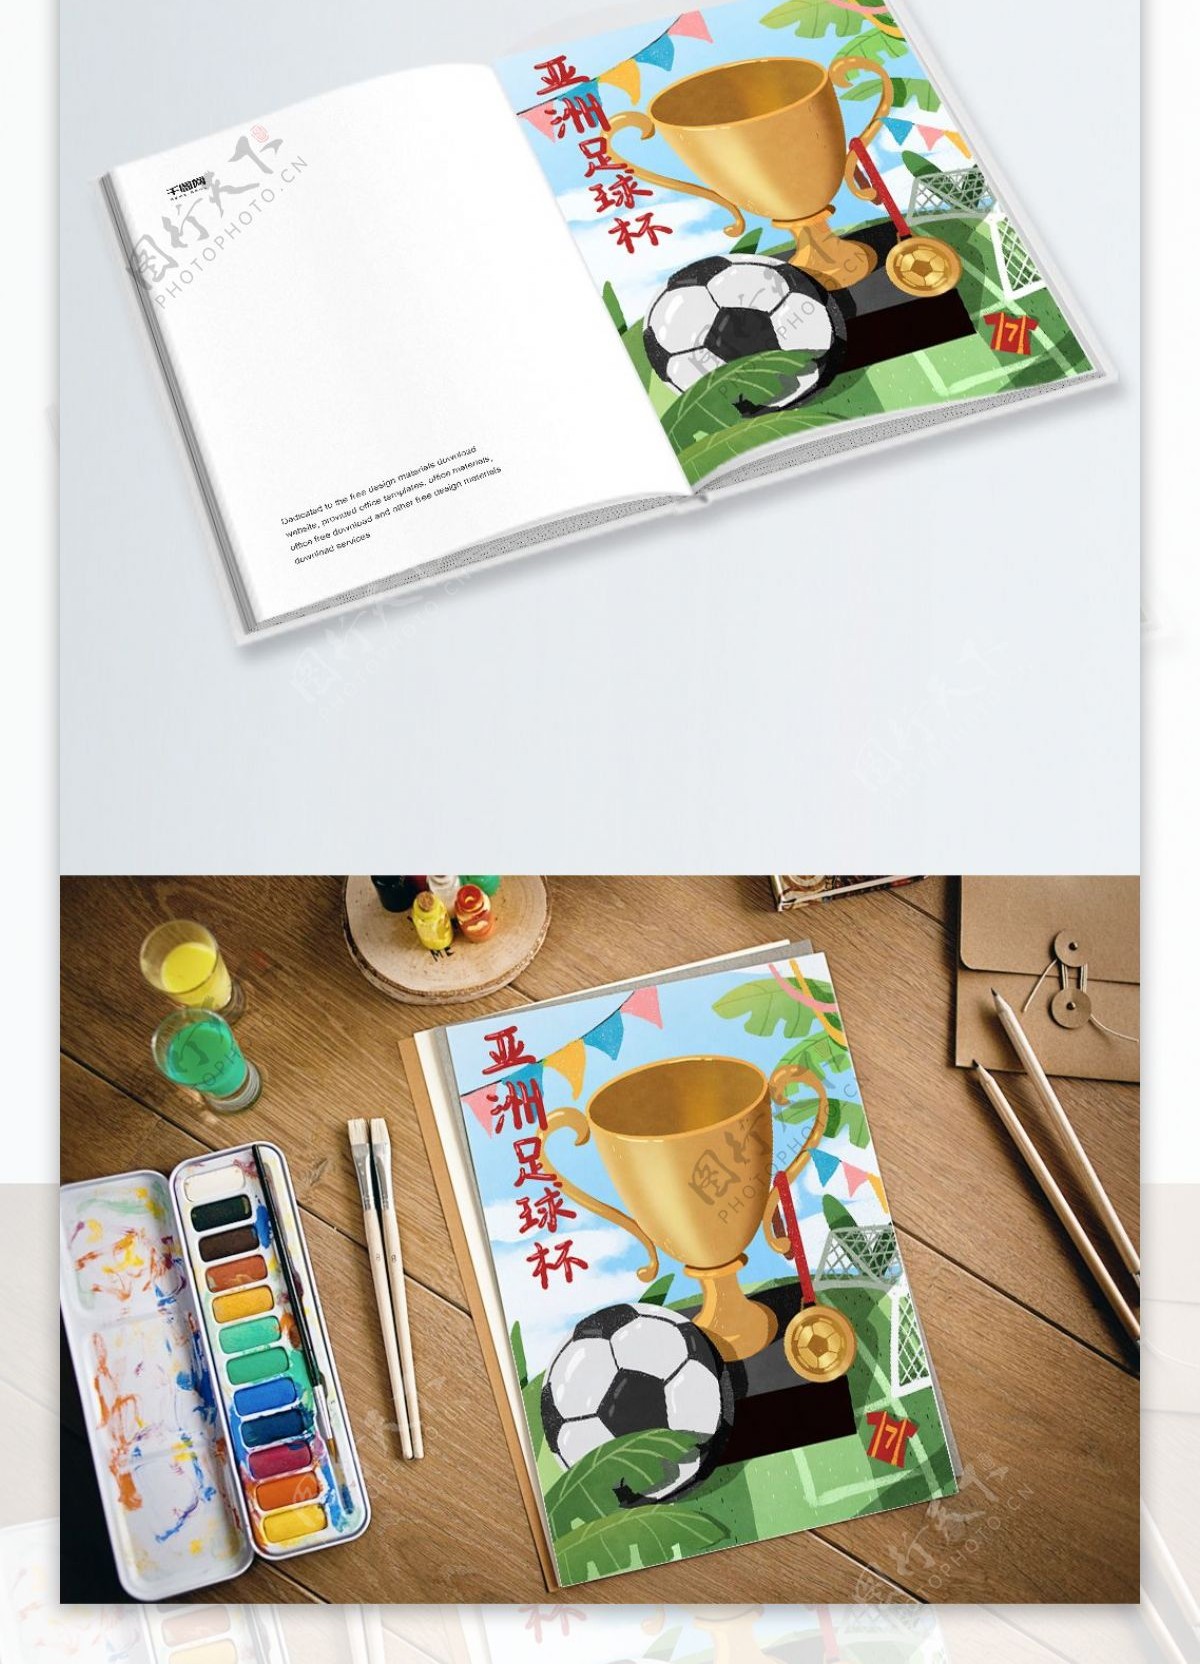 亚洲足球杯足球奖杯宣传插画海报